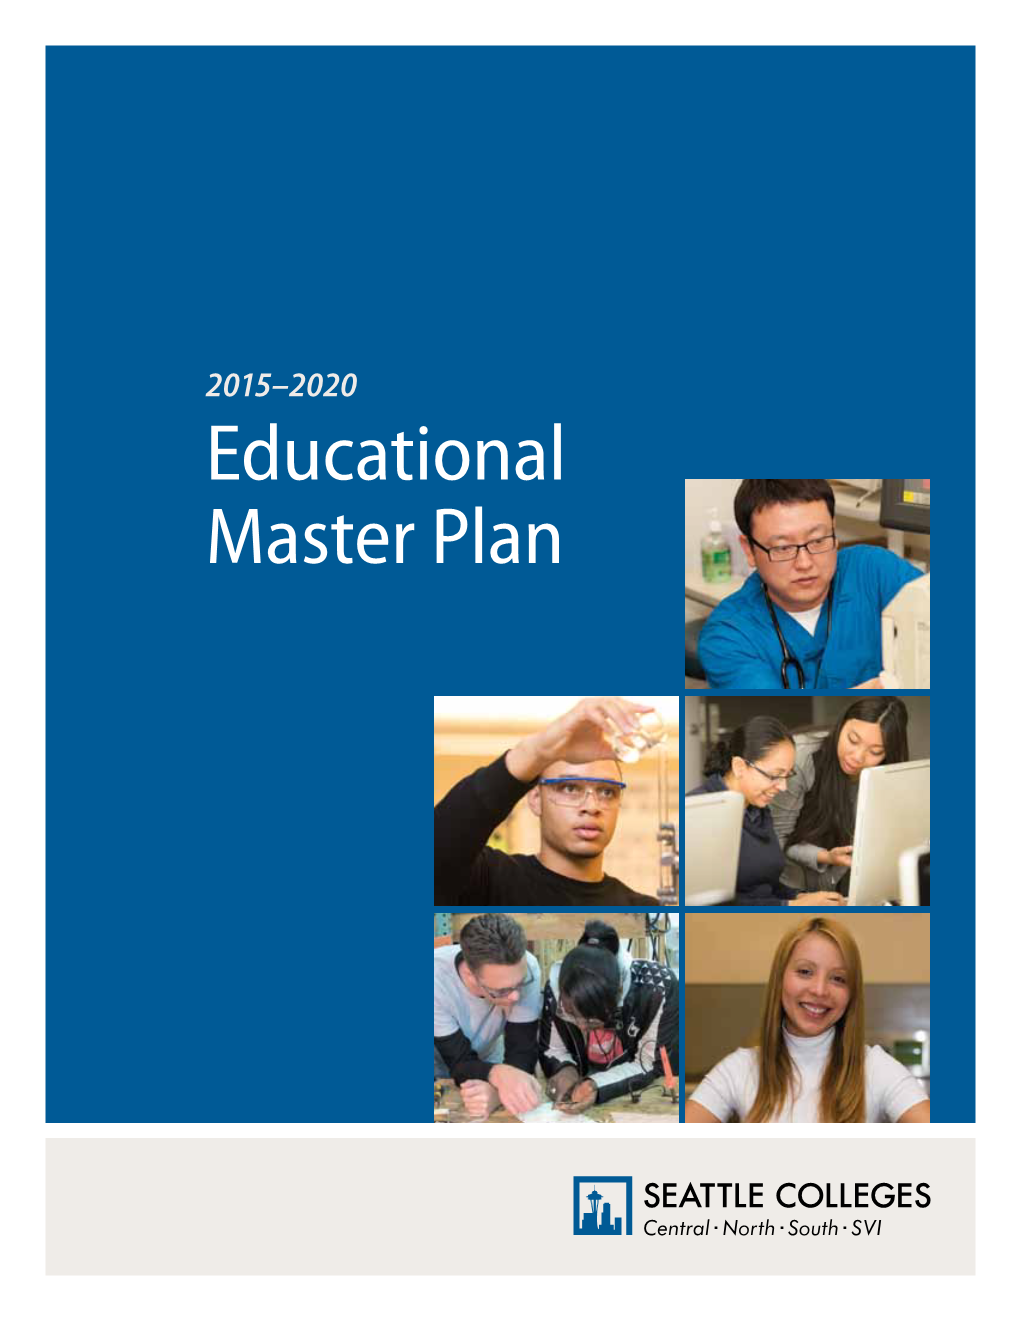 2015-2020 Educational Master Plan